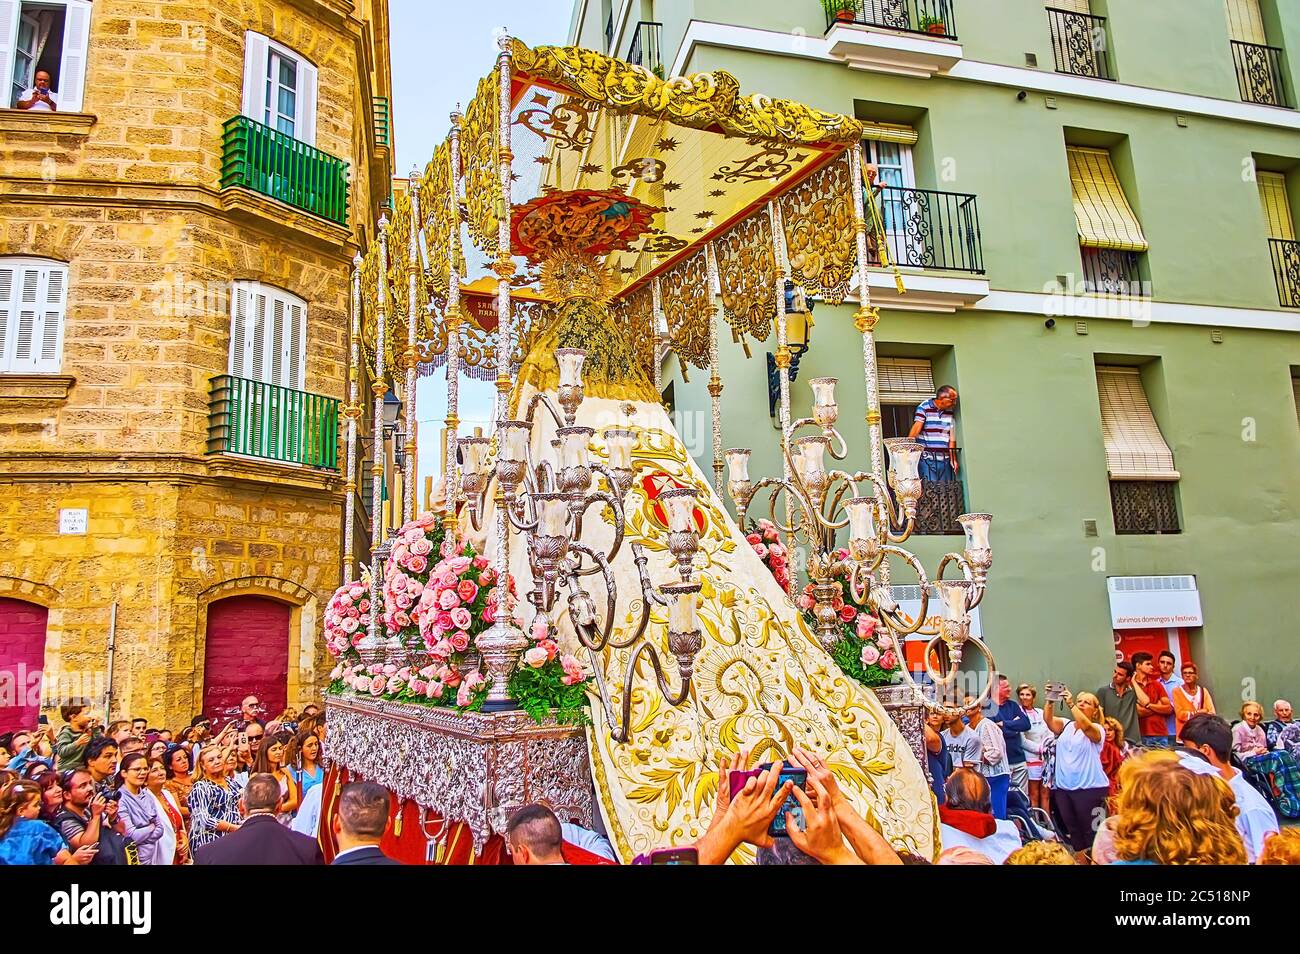 CÁDIZ, ESPAÑA - 22 DE SEPTIEMBRE de 2019: Partisipants de Mercedes Fiesta (Festival nuestra Señora de la Misericordia) camina por la calle, llevando velas, palanquin canoped Foto de stock